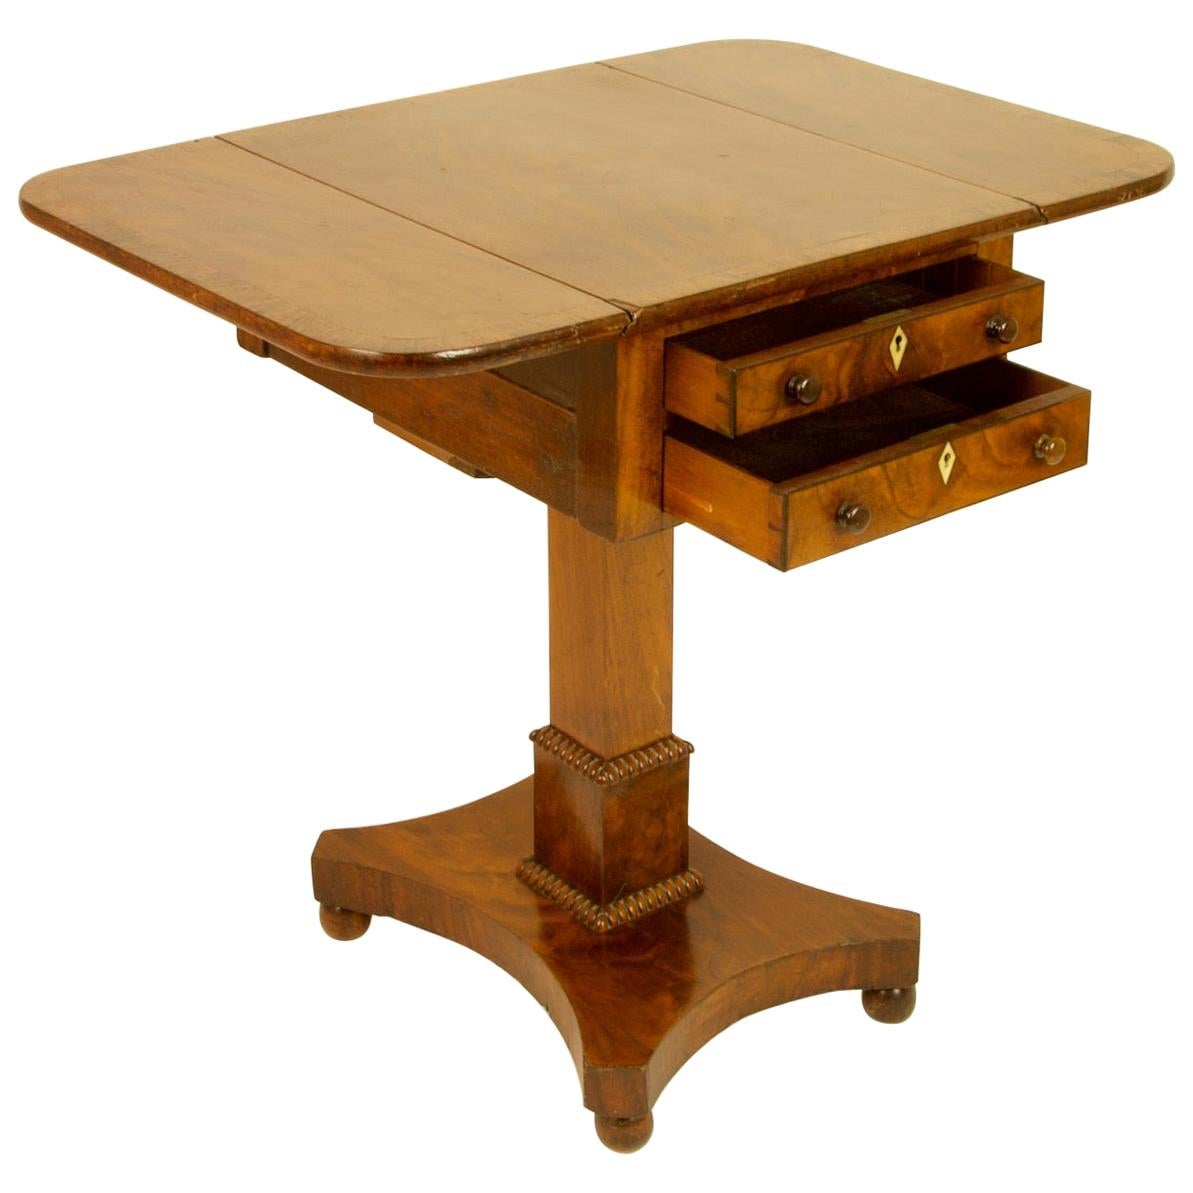 Petite table d'appoint Regency anglaise du 19ème siècle en acajou Pembroke ou à feuilles tombantes